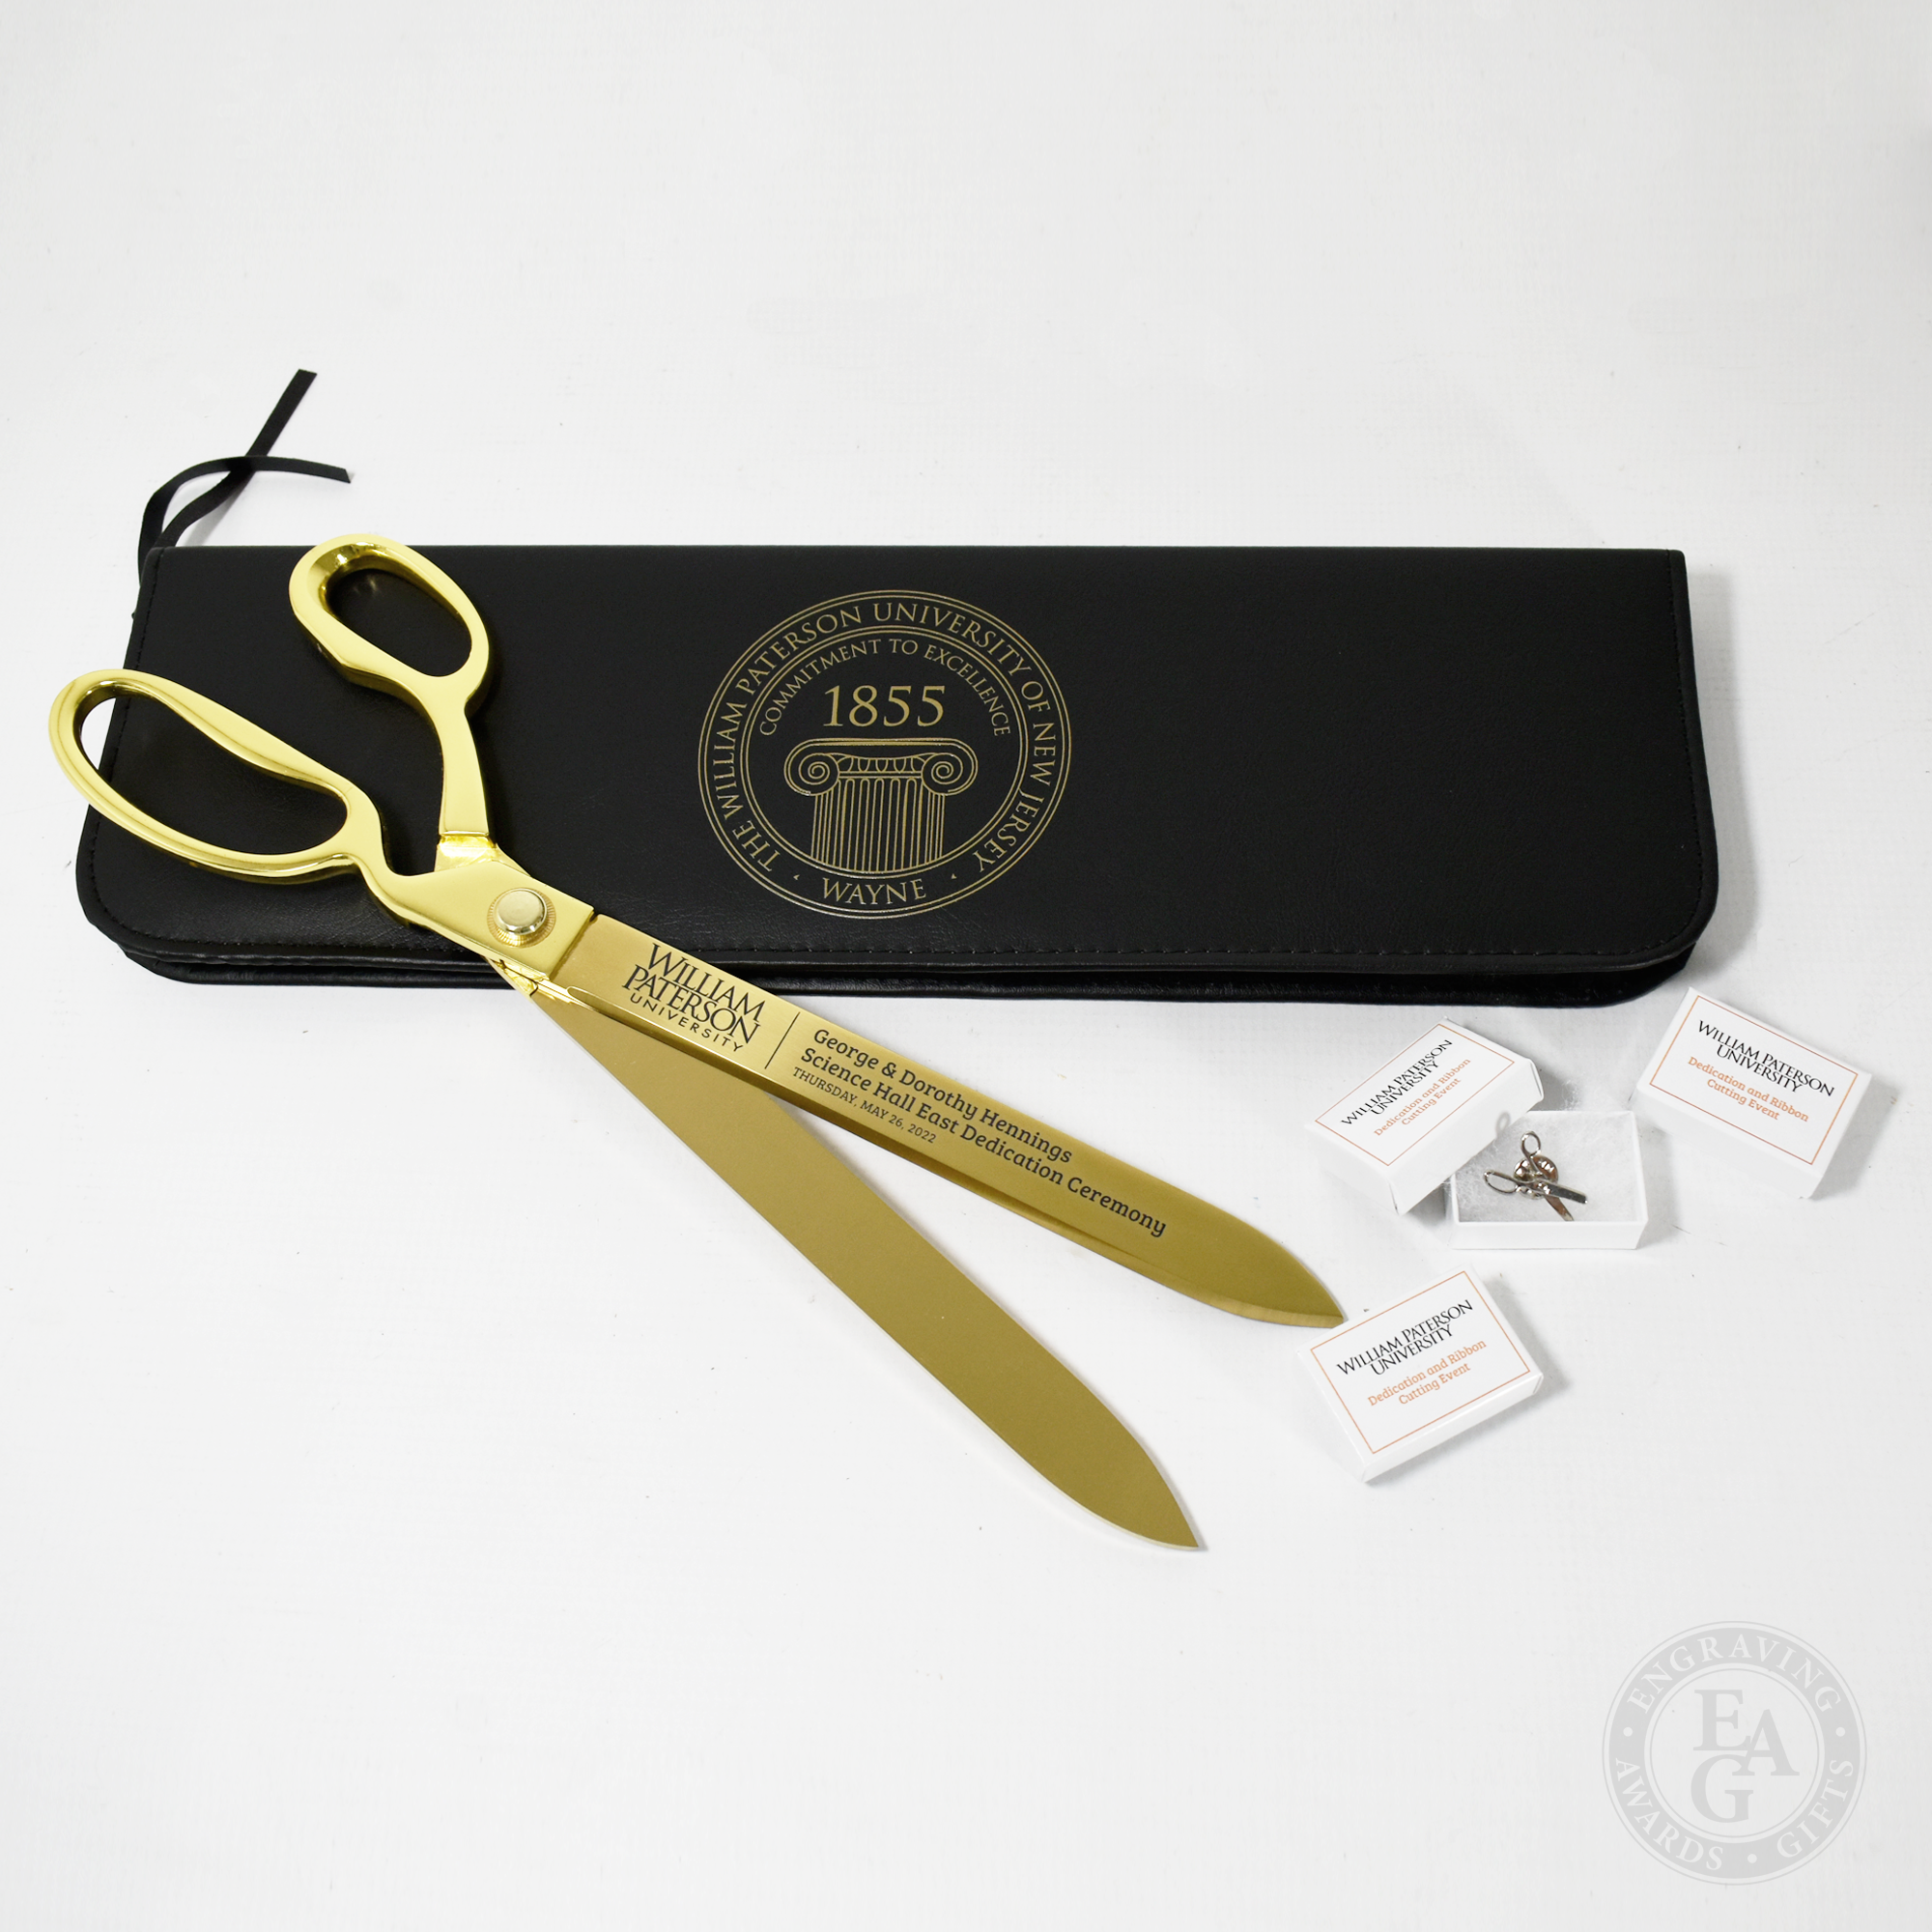 Deluxe Golden Handle Stainless Steel Ceremonial Scissors